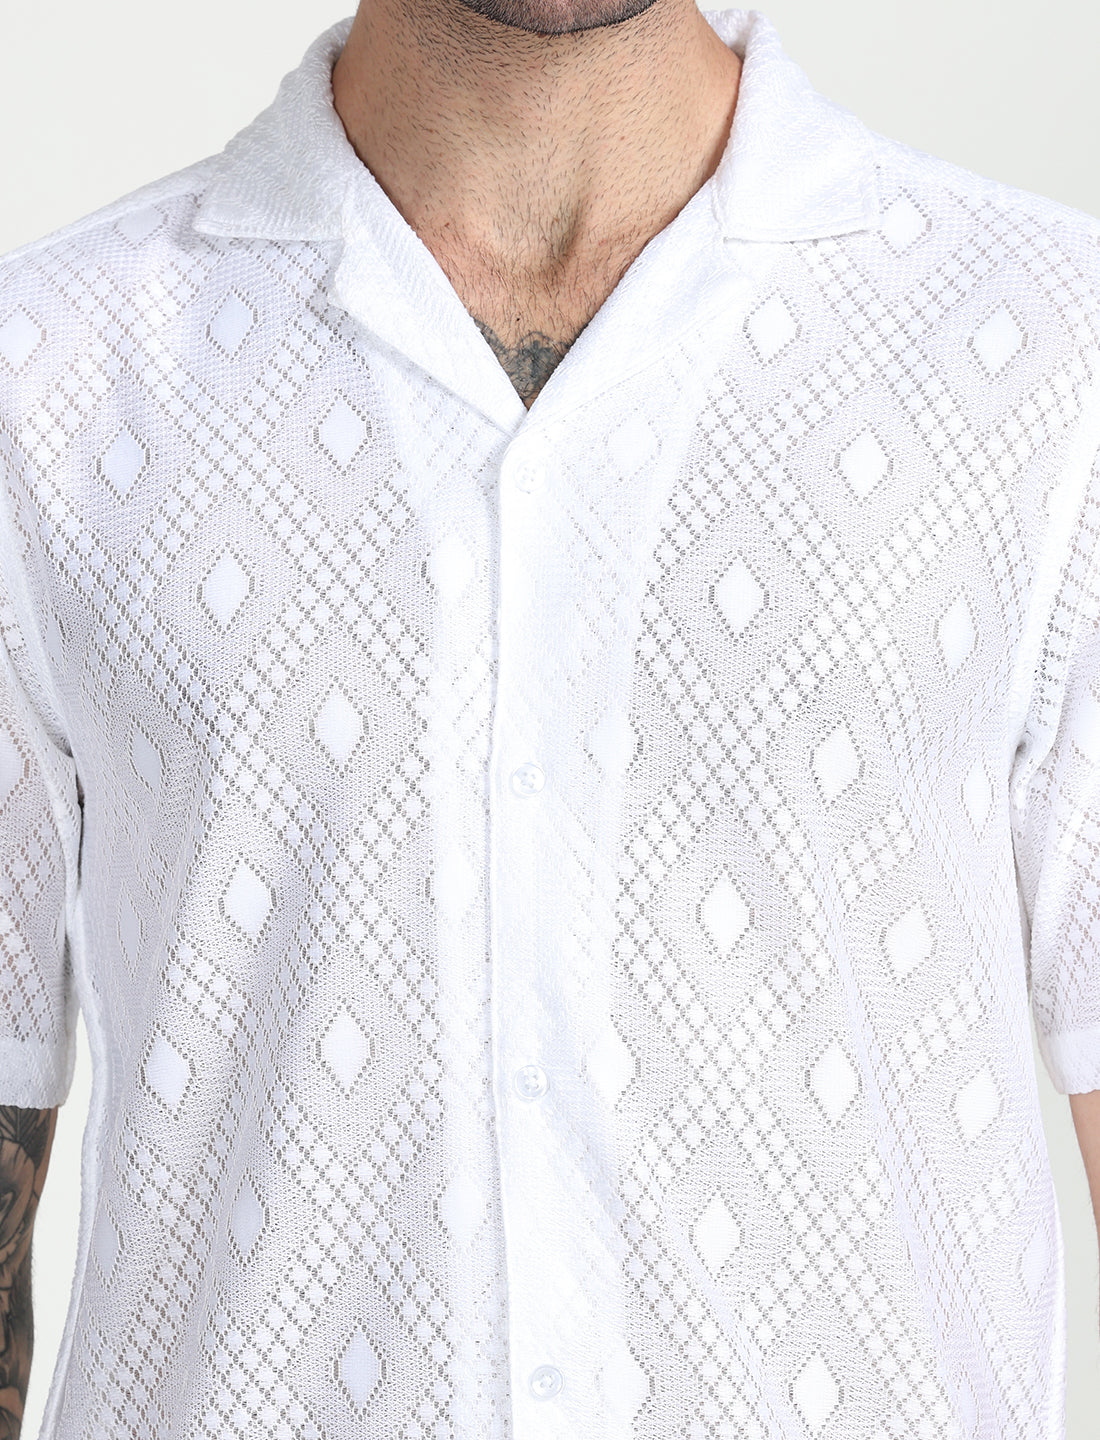 White Crochet Half Sleeve Shirt for Men 